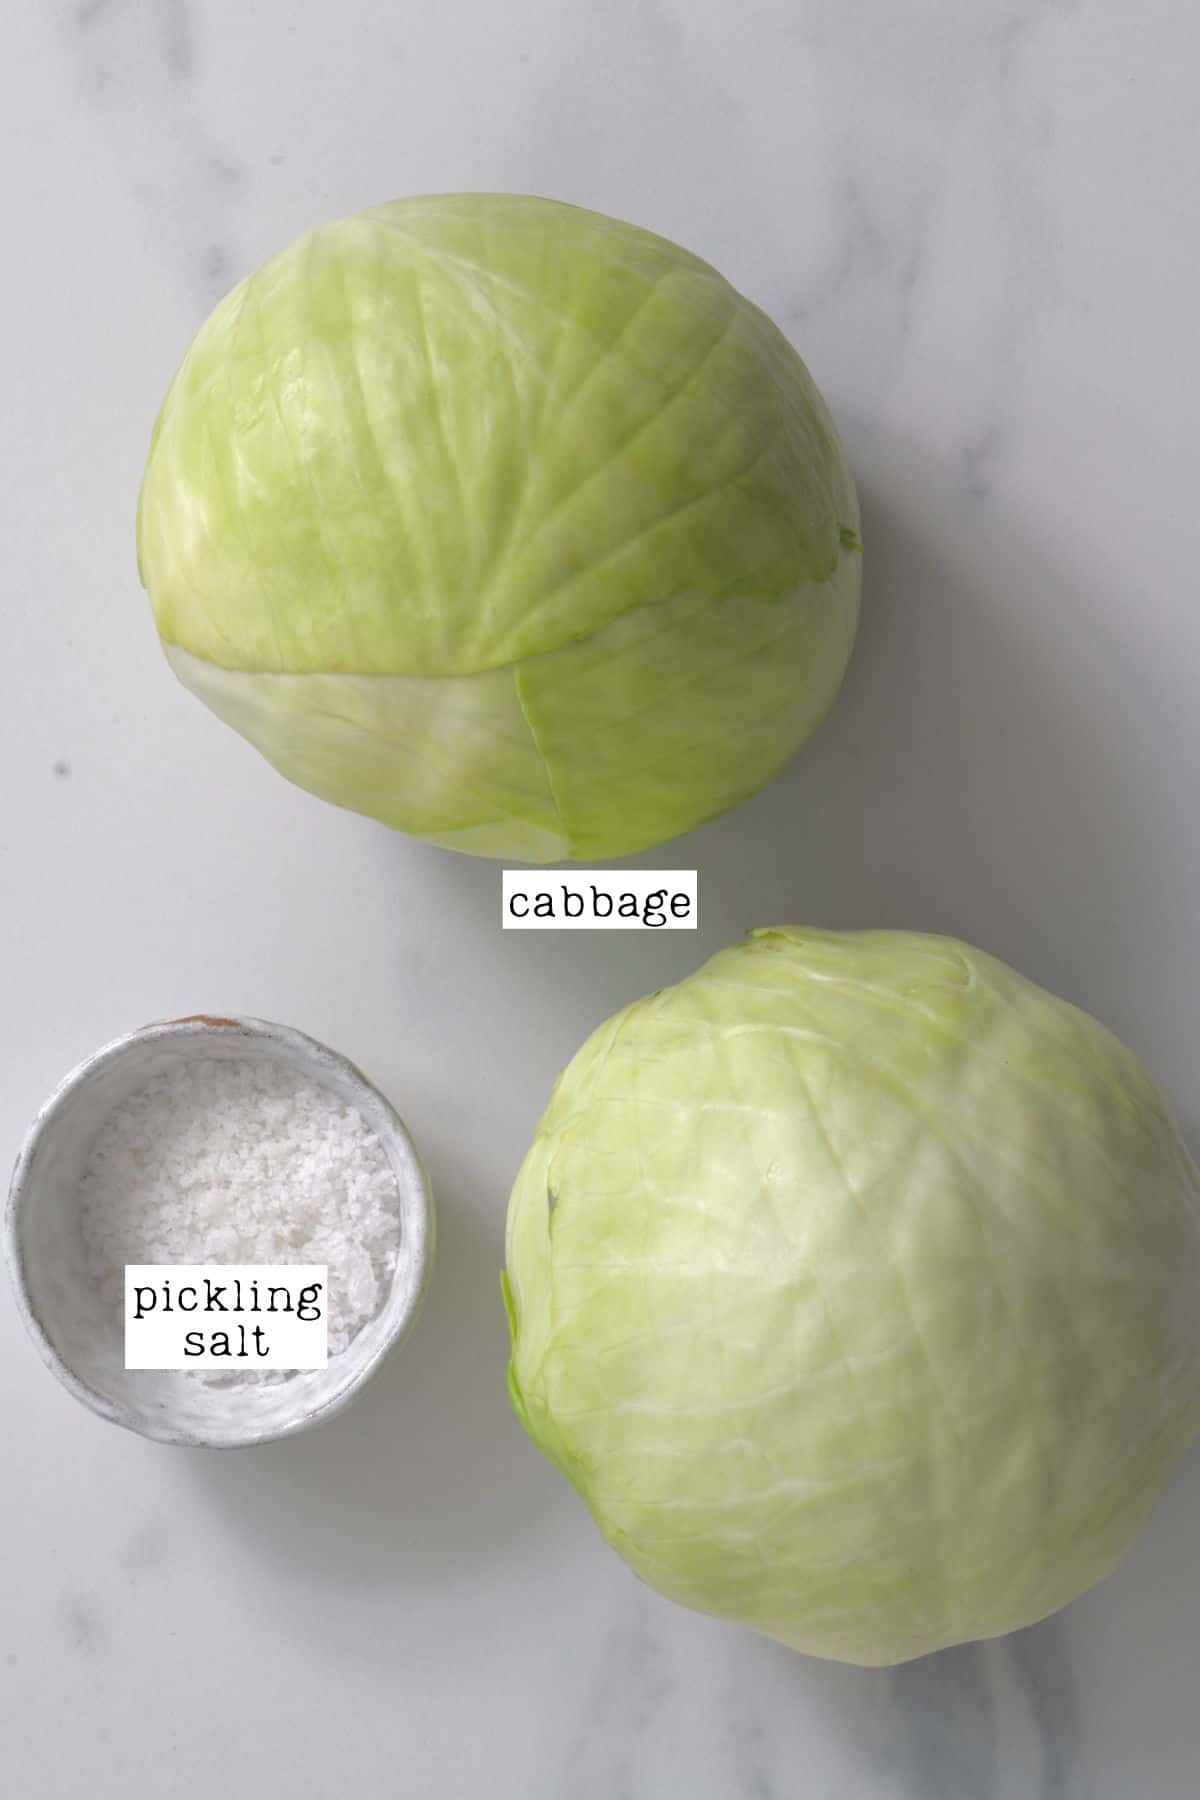 Ingredients for Sauerkraut